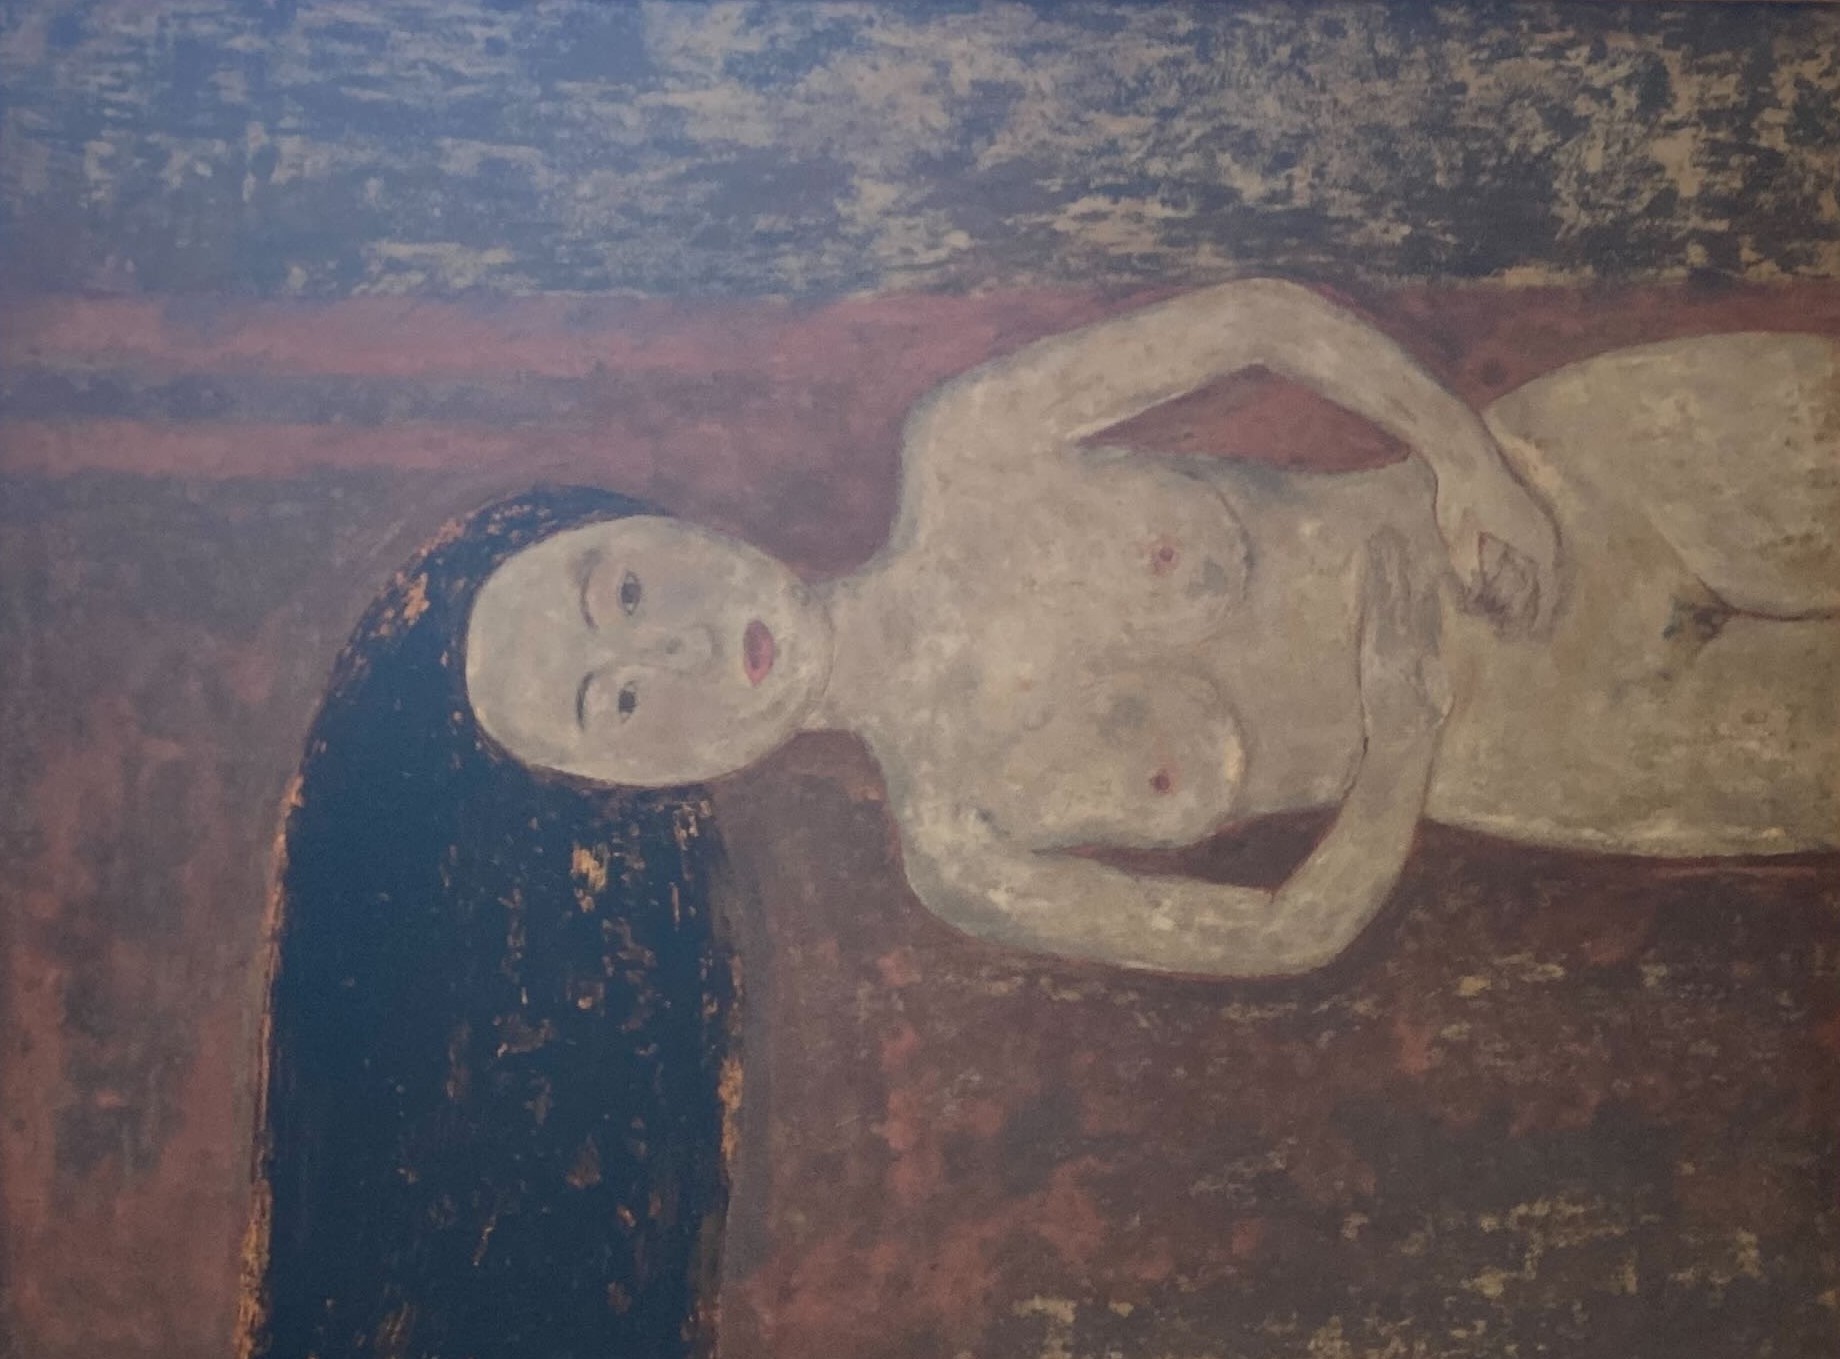  Ngỡ ngàng với 3 bức tranh nude trong triển lãm tranh sơn mài ở Bảo tàng Mỹ thuật Việt Nam   - Ảnh 4.